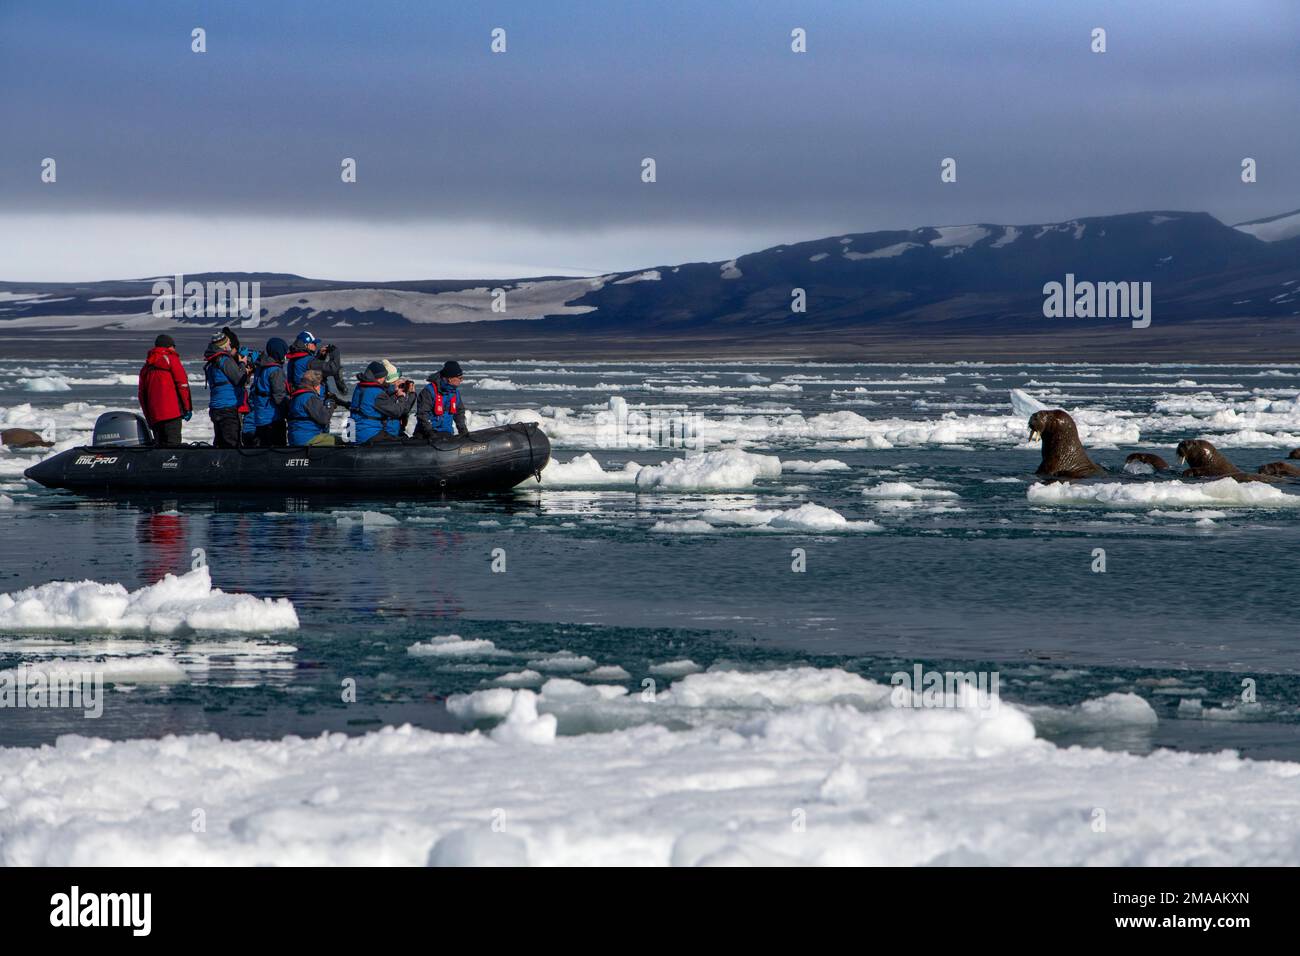 Les touristes prennent des photos de la colonie de morses (Odobenus rosmarus), Torellneset, Svalbard, Arctique, Norvège, Scandinavie, Europe. Navire de croisière d'expédition Banque D'Images